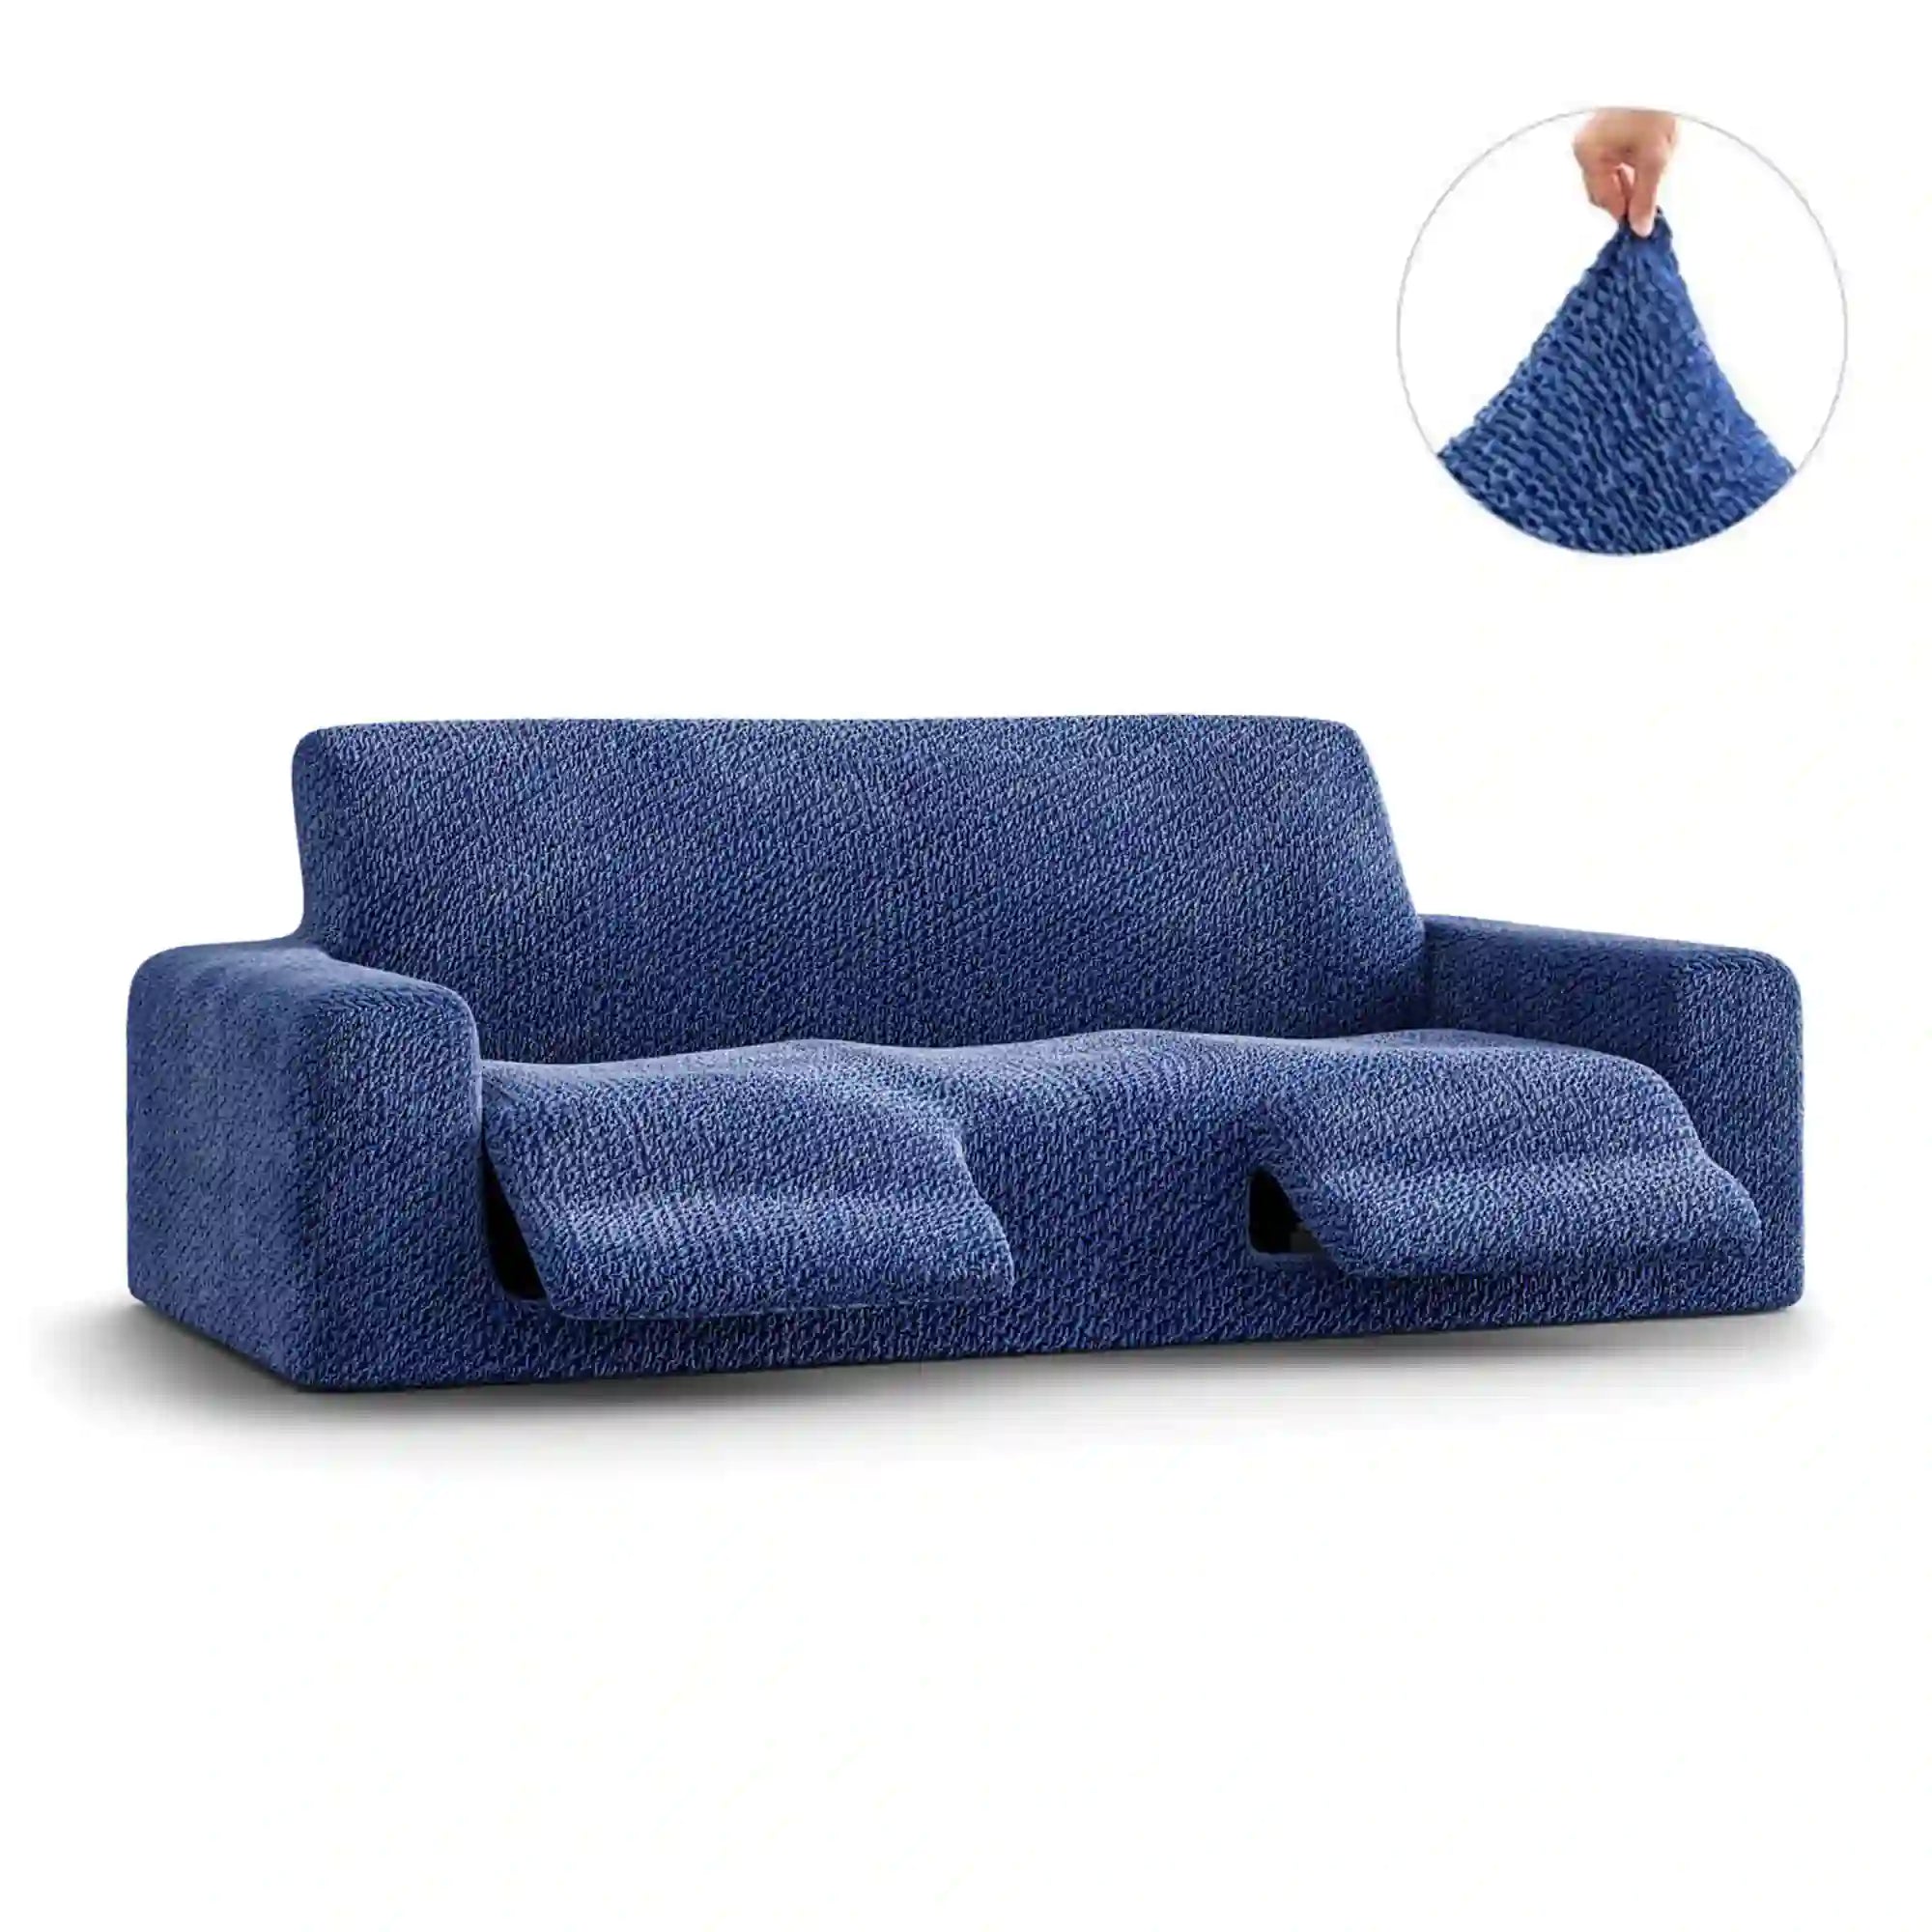 3 Seater Recliner Sofa Cover - Blue, Velvet